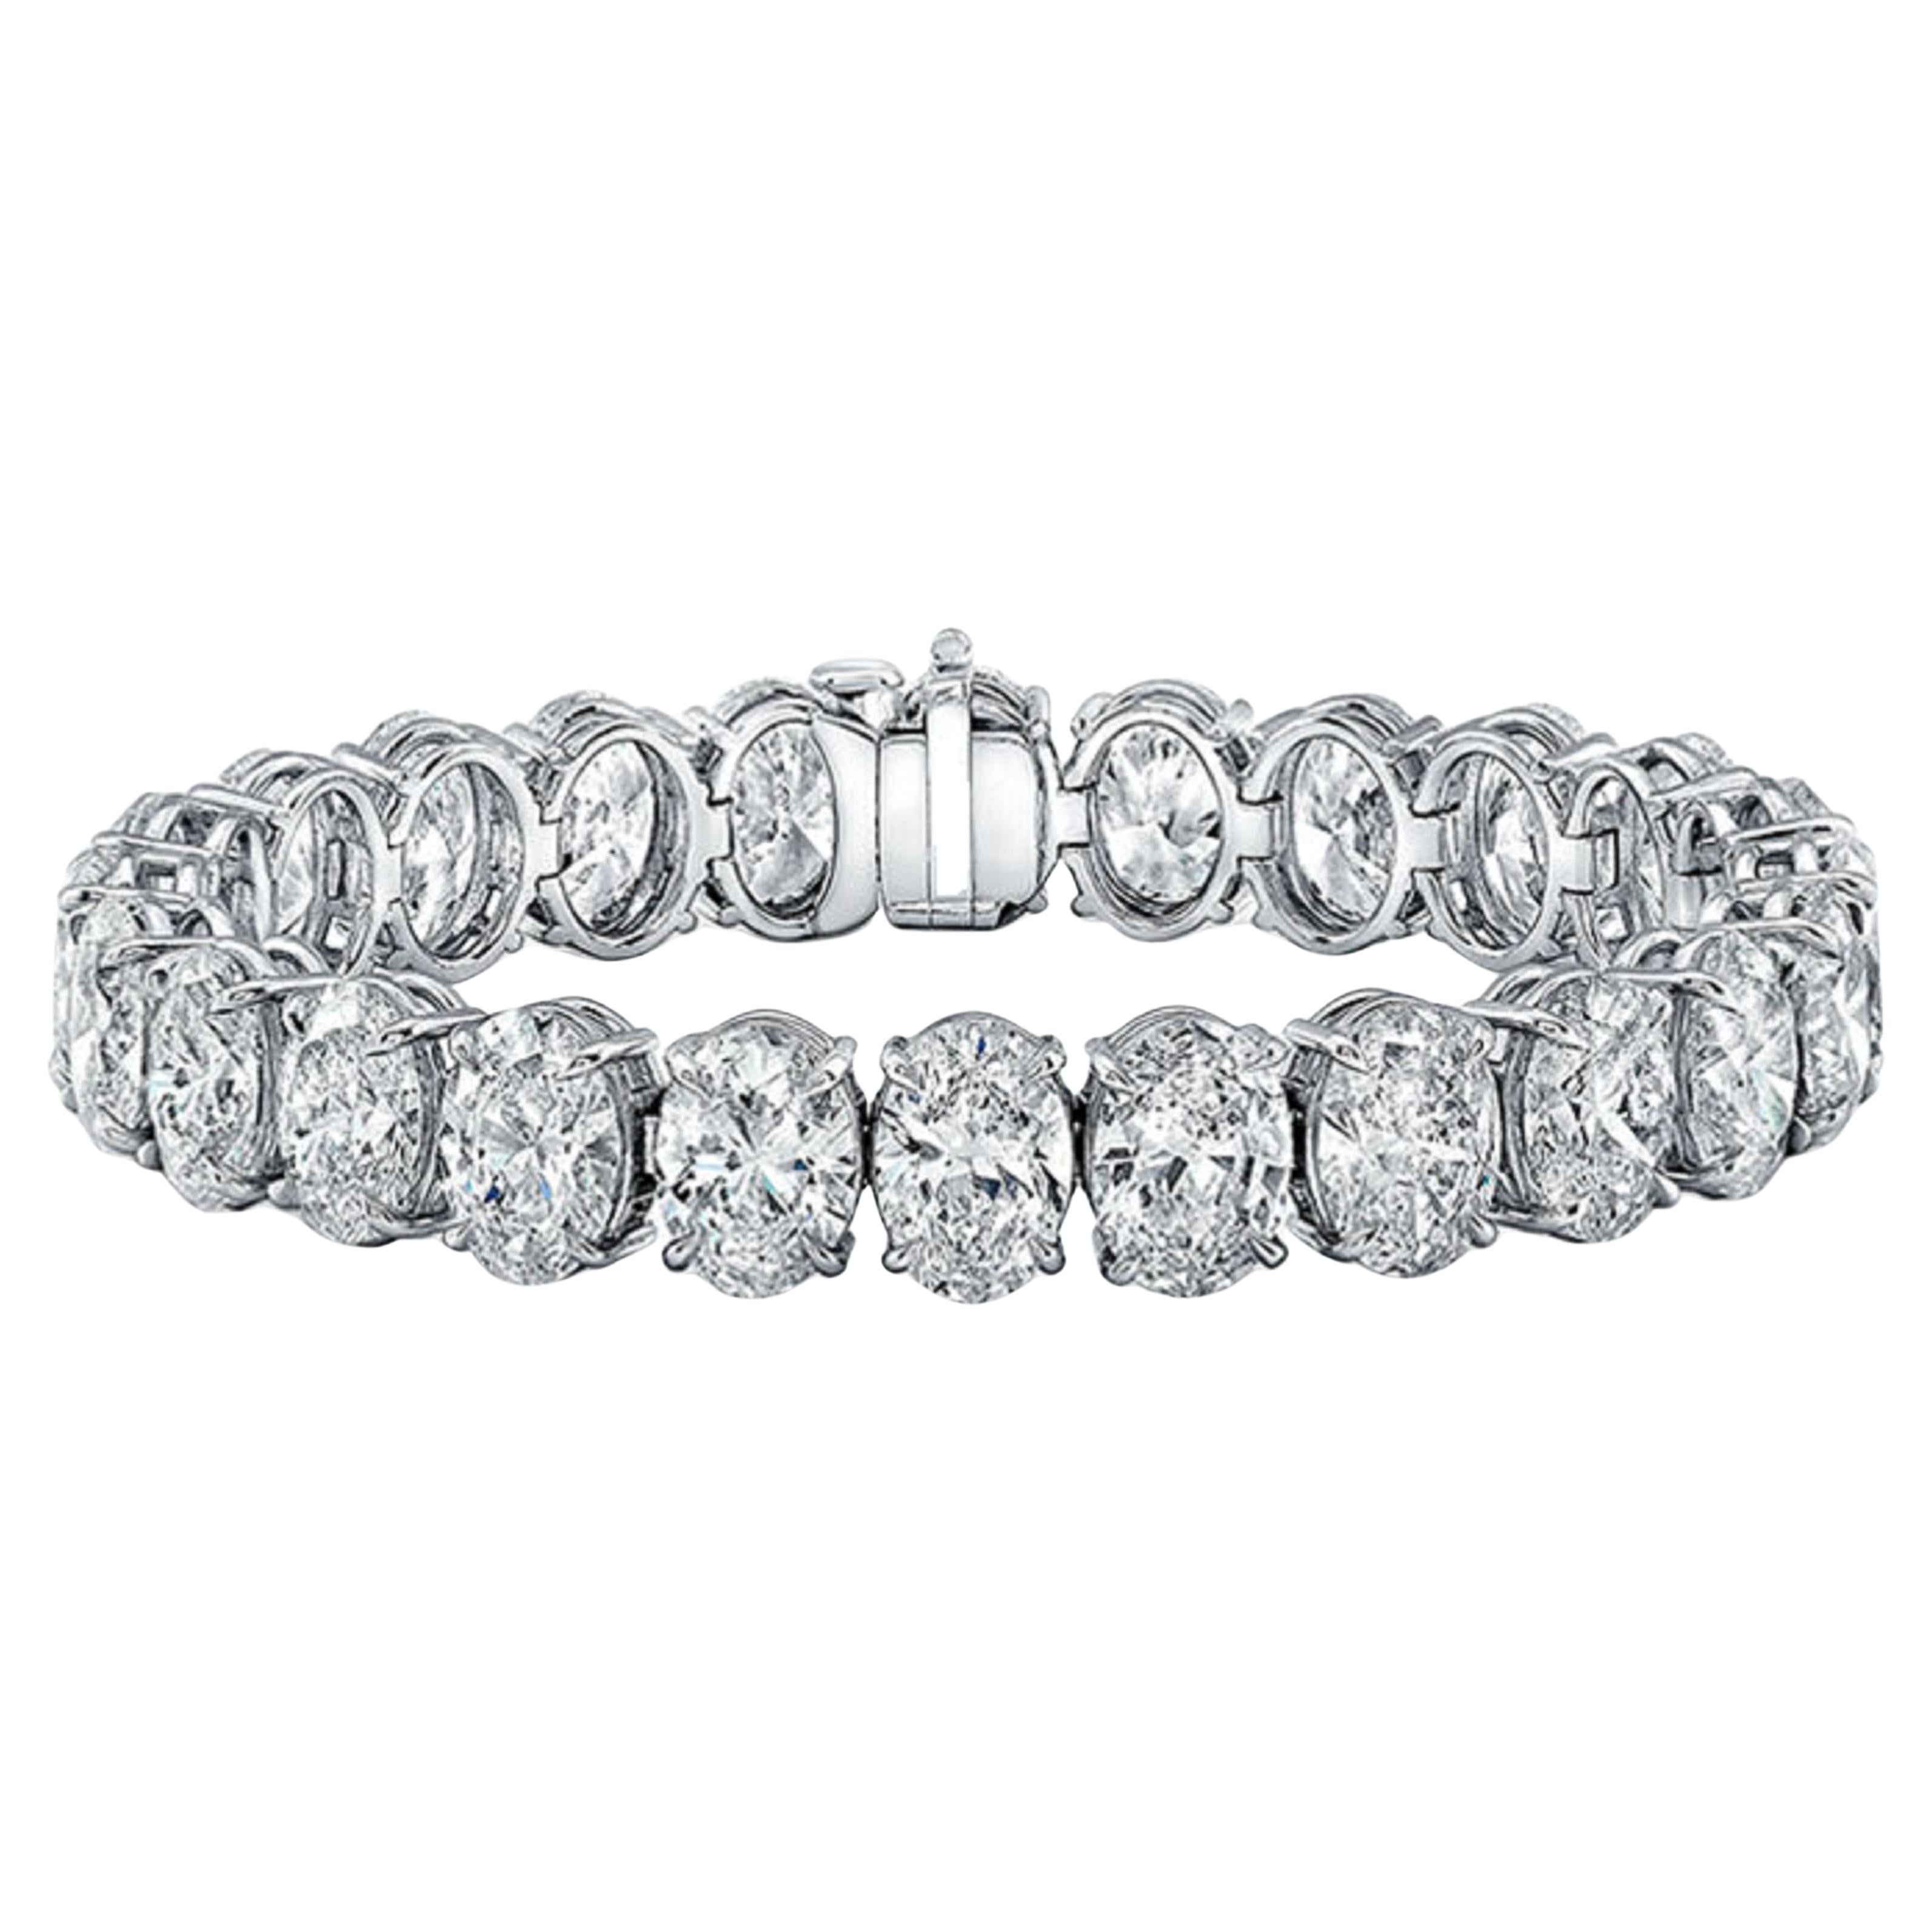 Ce bracelet exquis fabriqué par Antinori di Sanpietro ROMA est orné de diamants de taille ovale pesant au total 19 carats. Toutes les pierres sont très blanches et parfaitement assorties.  Une pièce très élégante et intemporelle.  
La couleur des